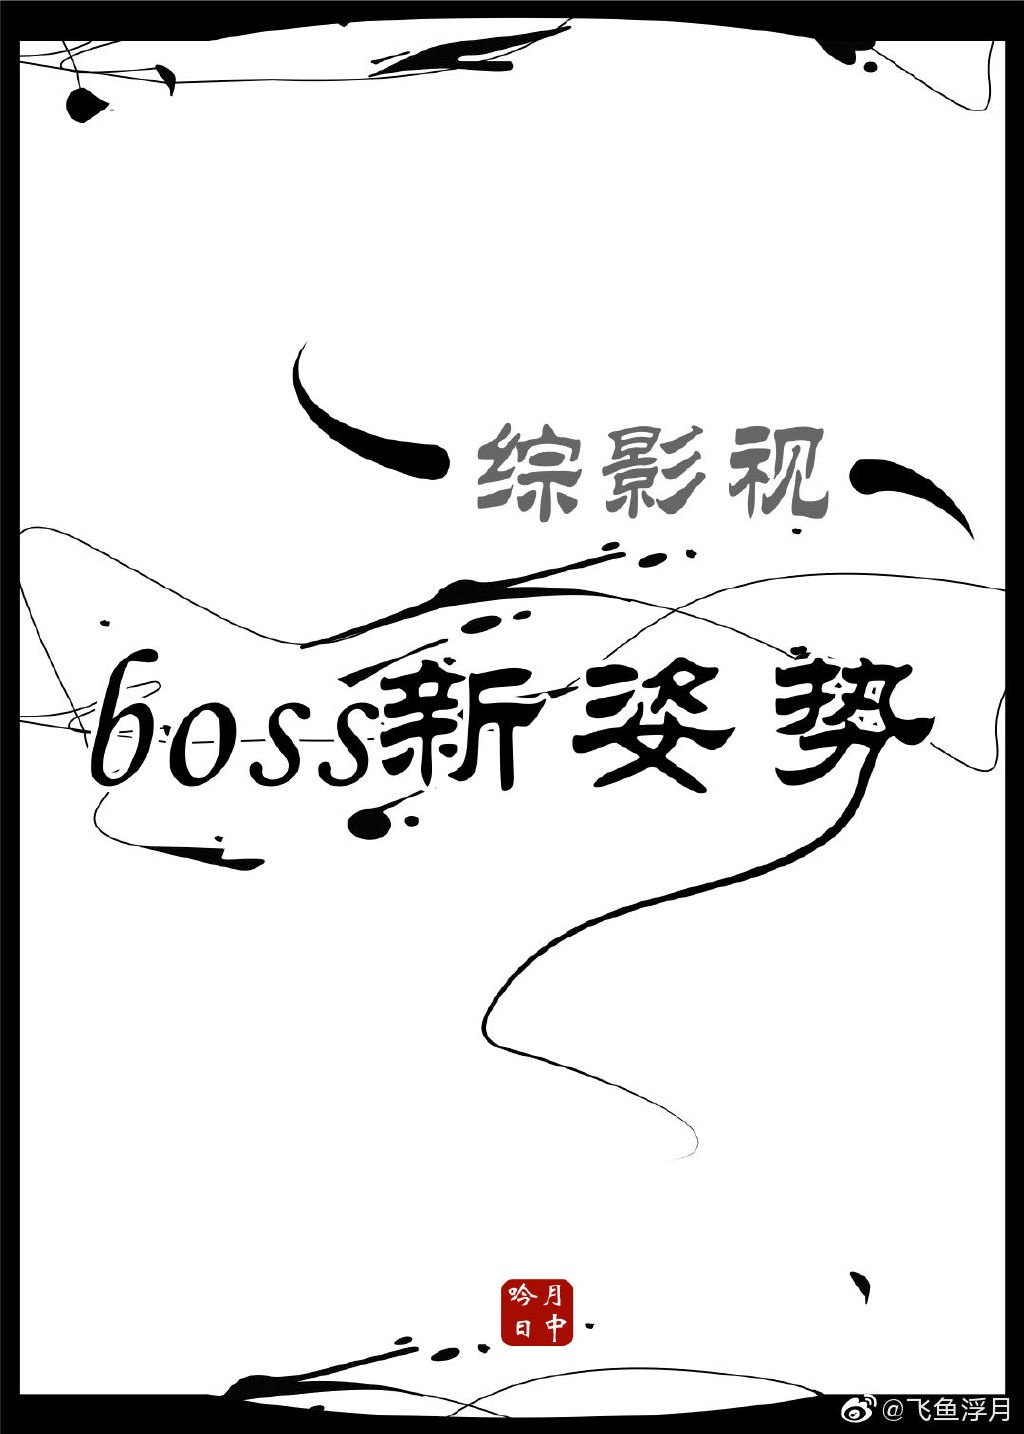 小说《boss新姿势综影视》TXT下载_boss新姿势综影视